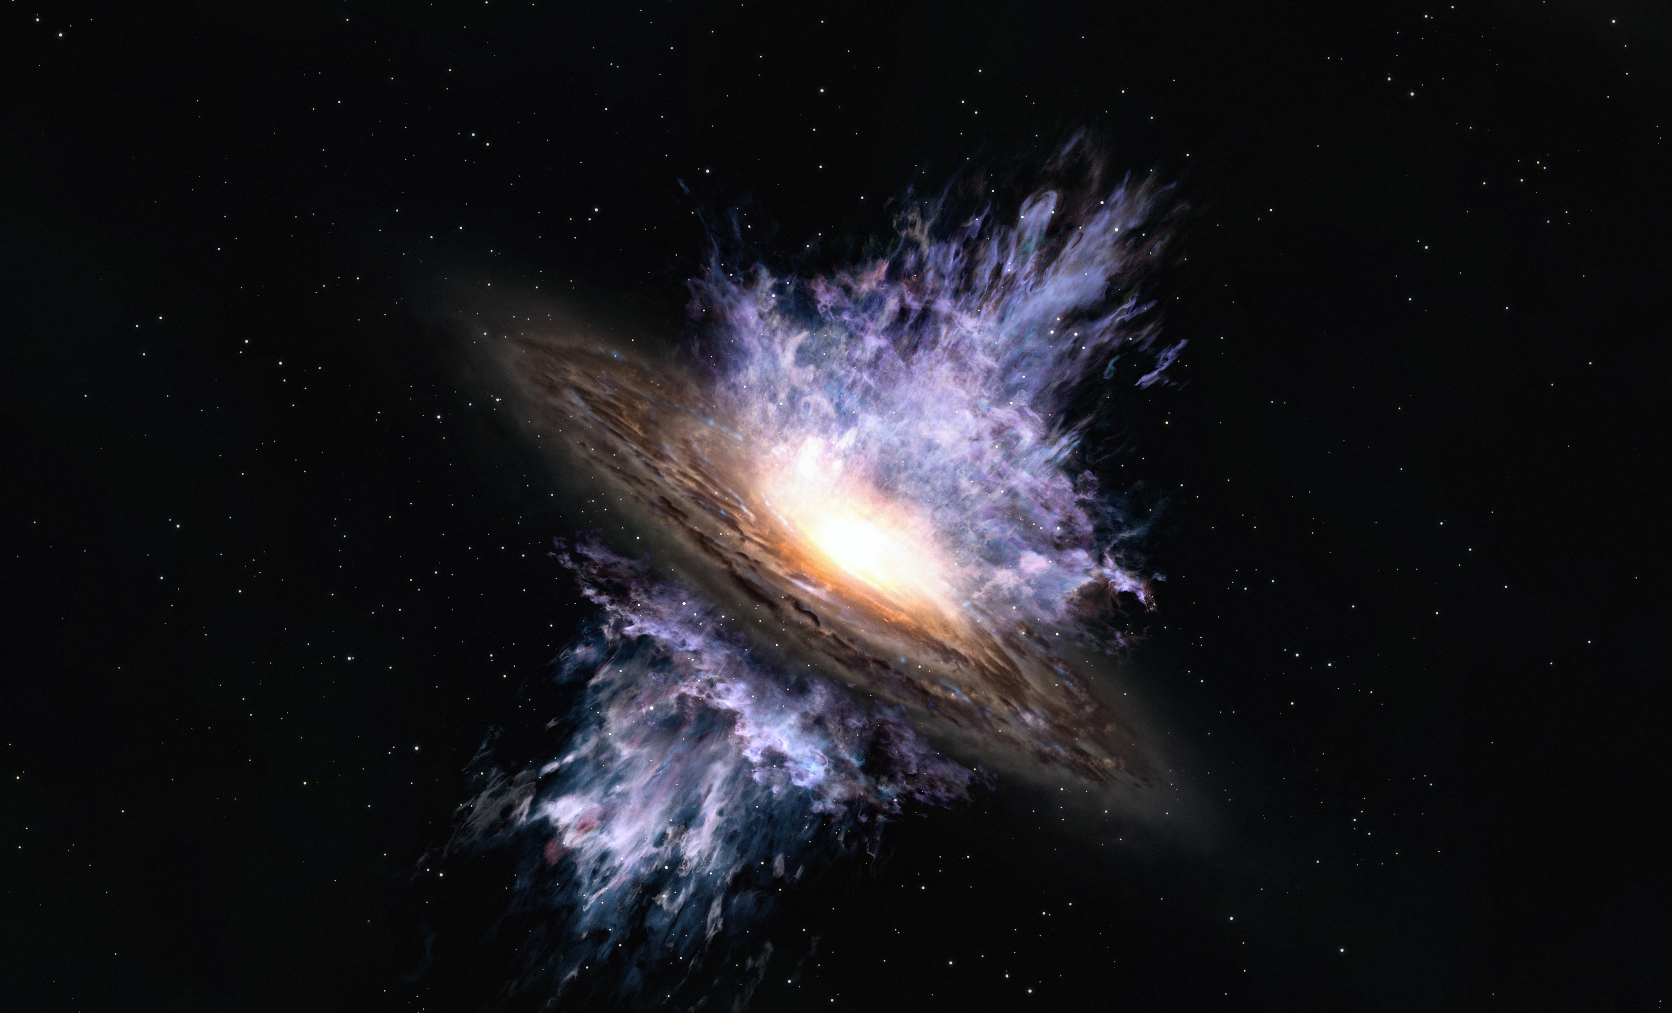 Vue d'artiste des vents galactiques produits par un trou noir supermassif situé au centre d'une galaxie. L'énergie intense émanant du trou noir crée un flux de gaz à l'échelle de la galaxie qui souffle la matière interstellaire qui est le matériau de formation des étoiles. © Alma&nbsp;(ESO NAOJ, NRAO)